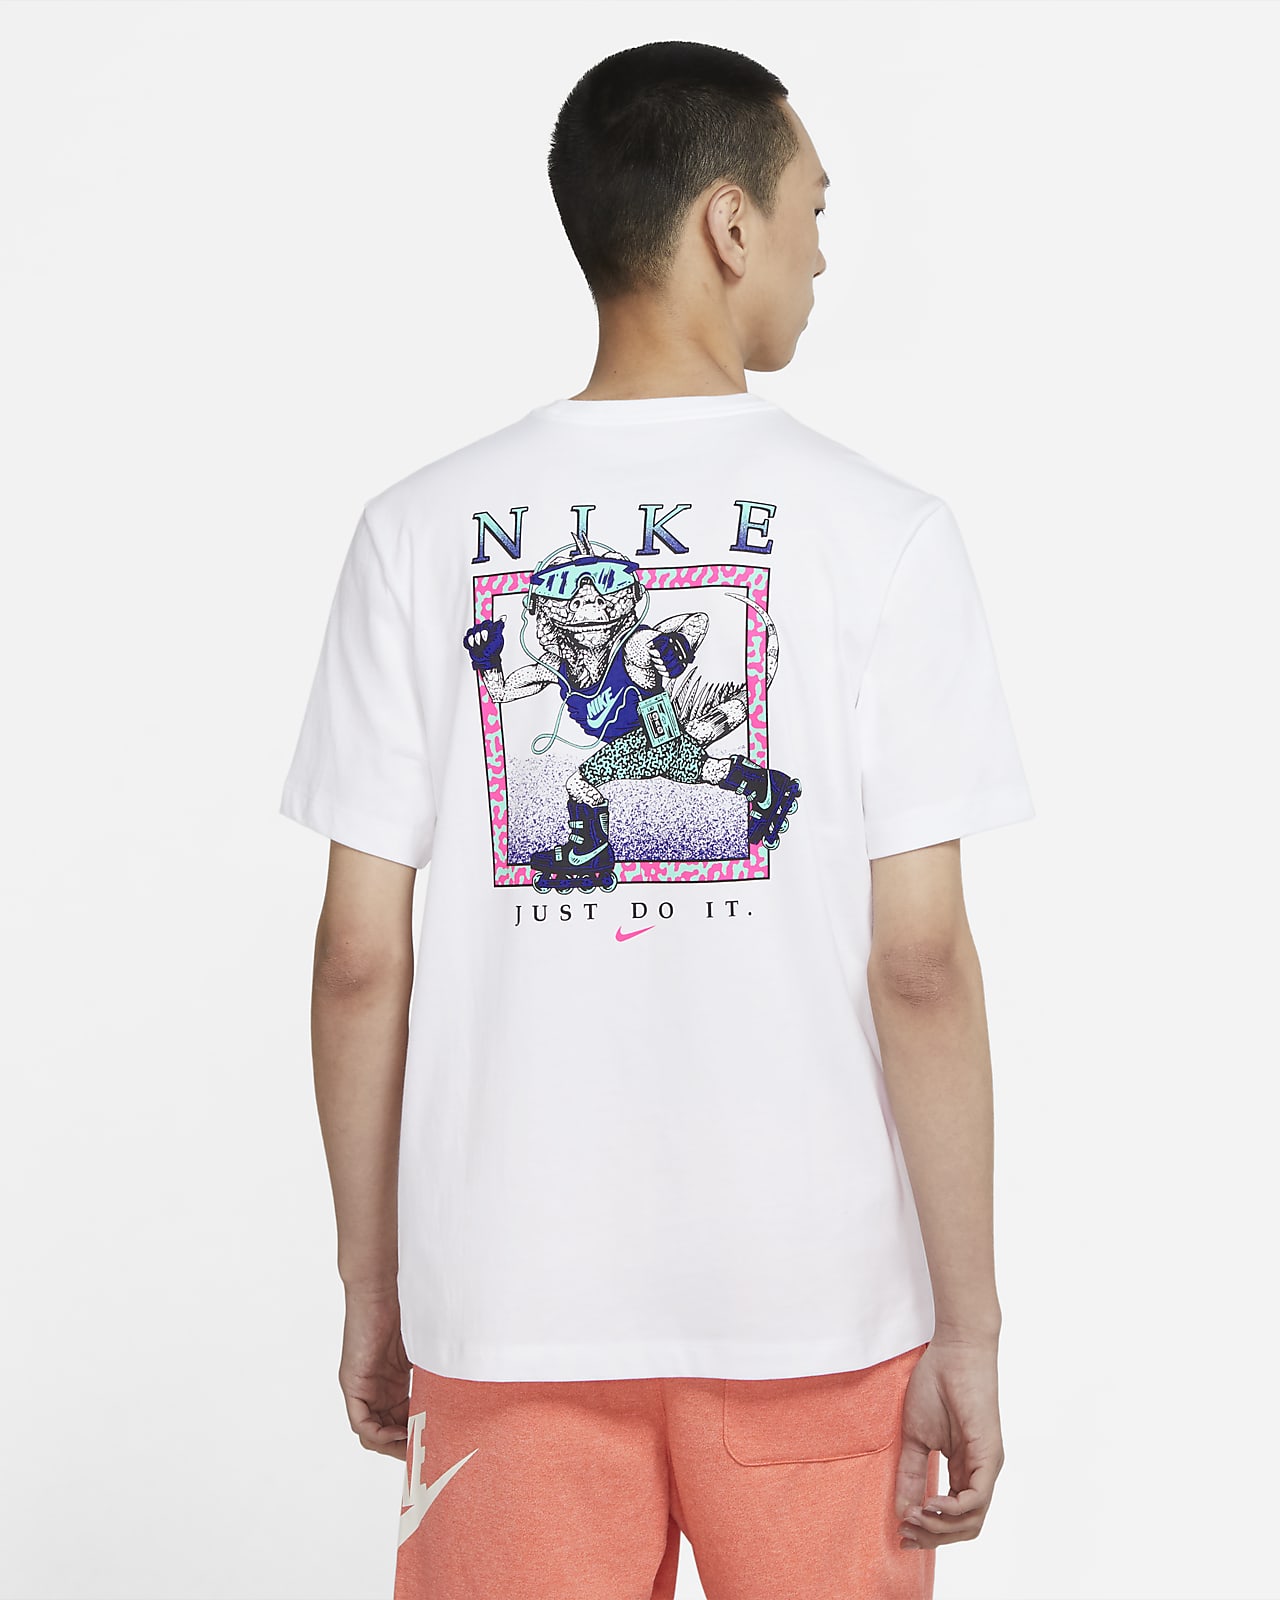 NIKE公式】ナイキ スポーツウェア メンズ Tシャツ.オンラインストア 